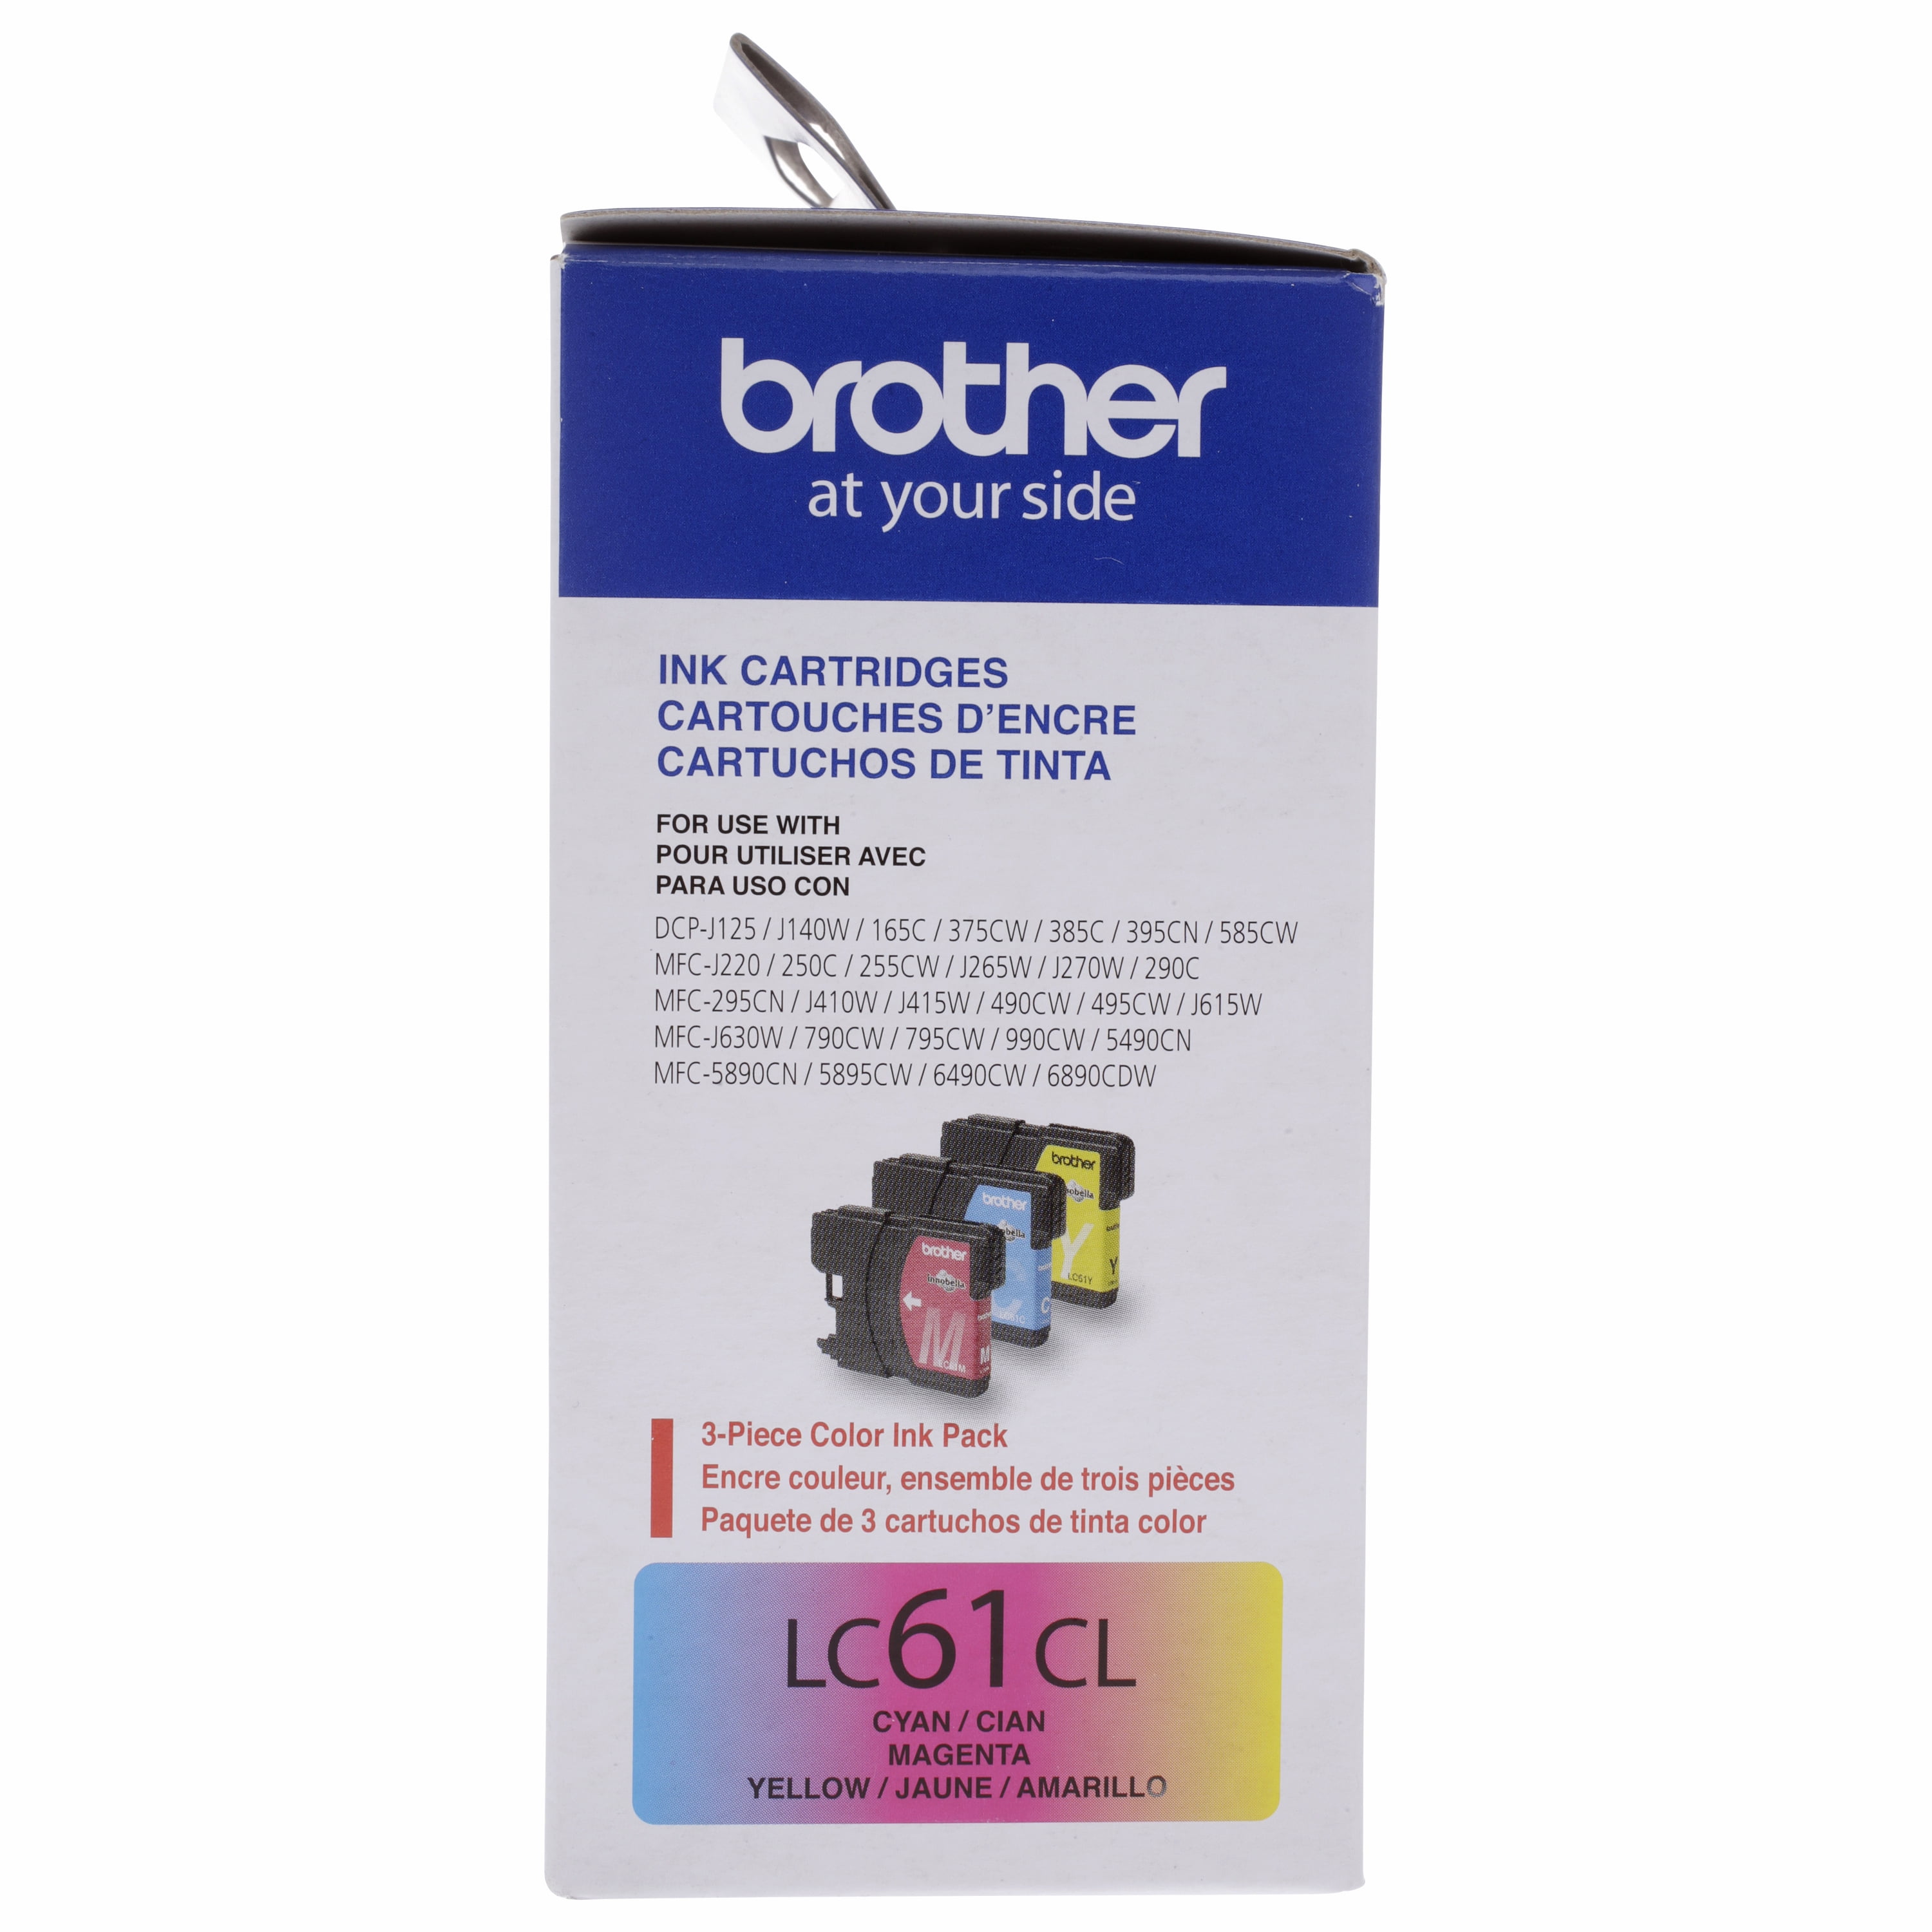 Brother DCP-J 140 W, les cartouches d'encre compatibles